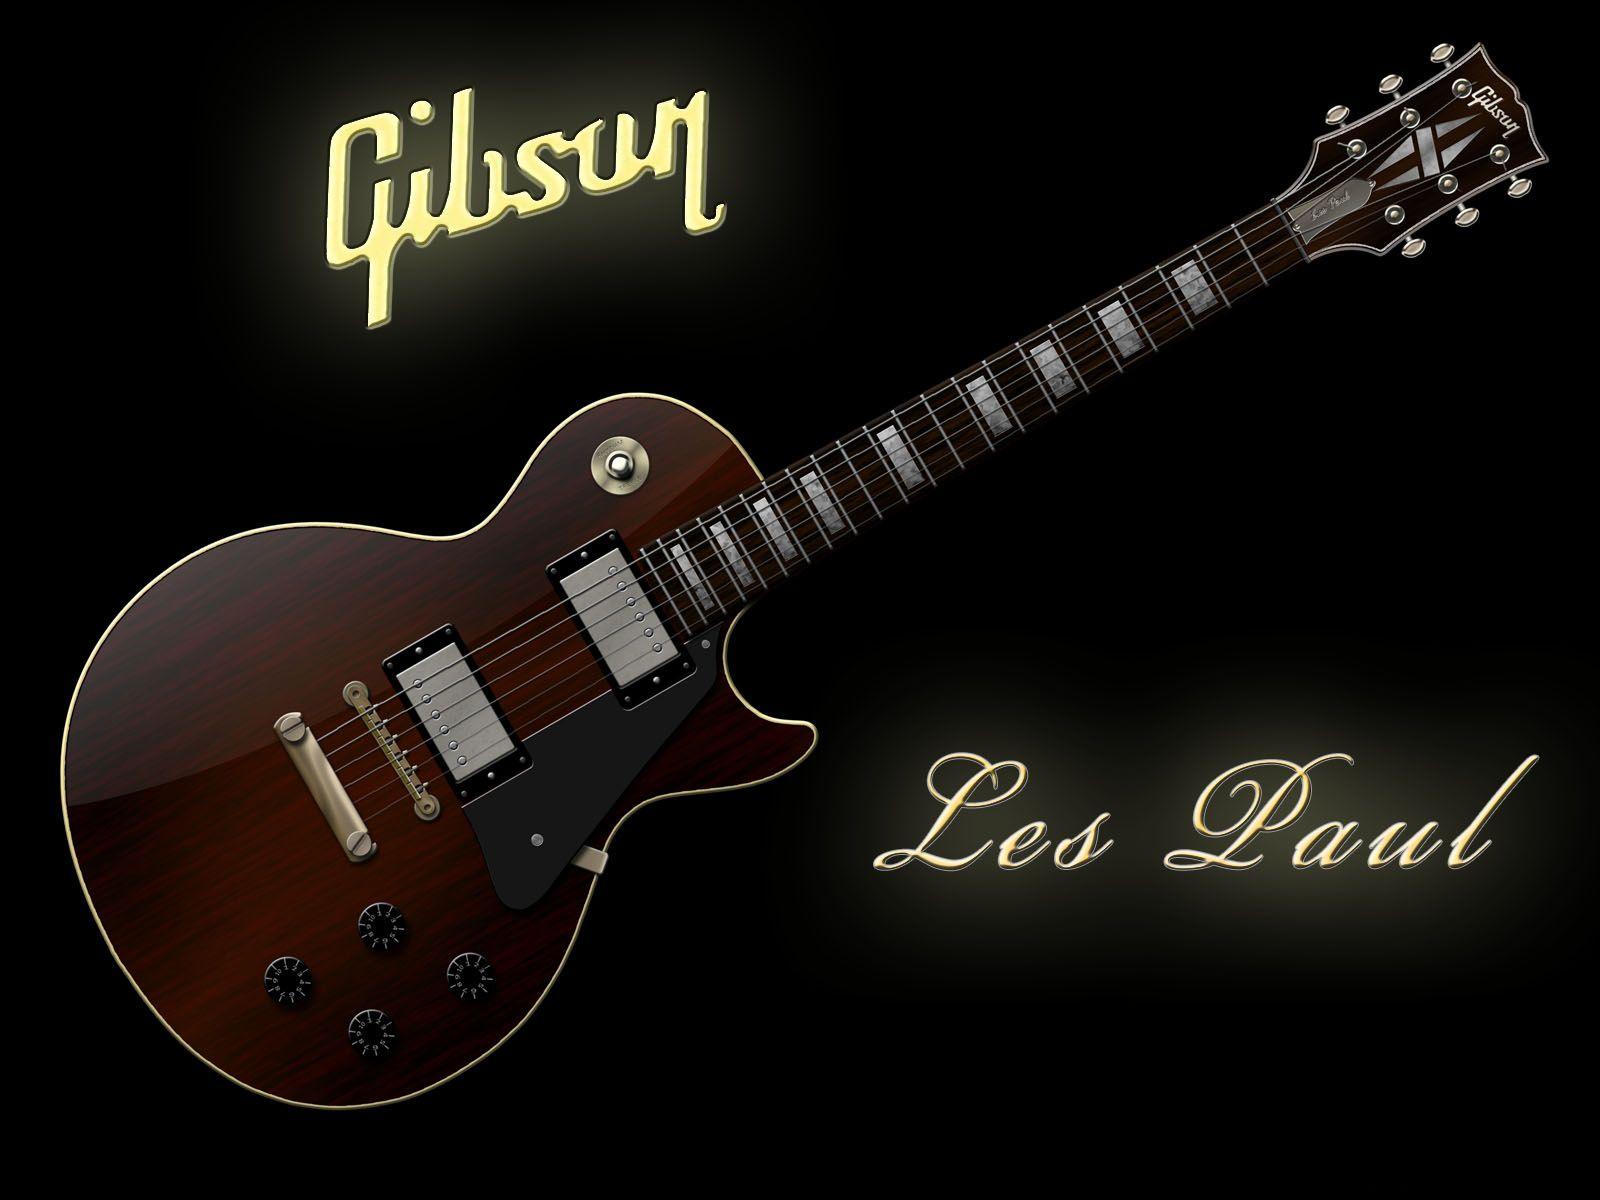 Gibson Guitar Wallpaper